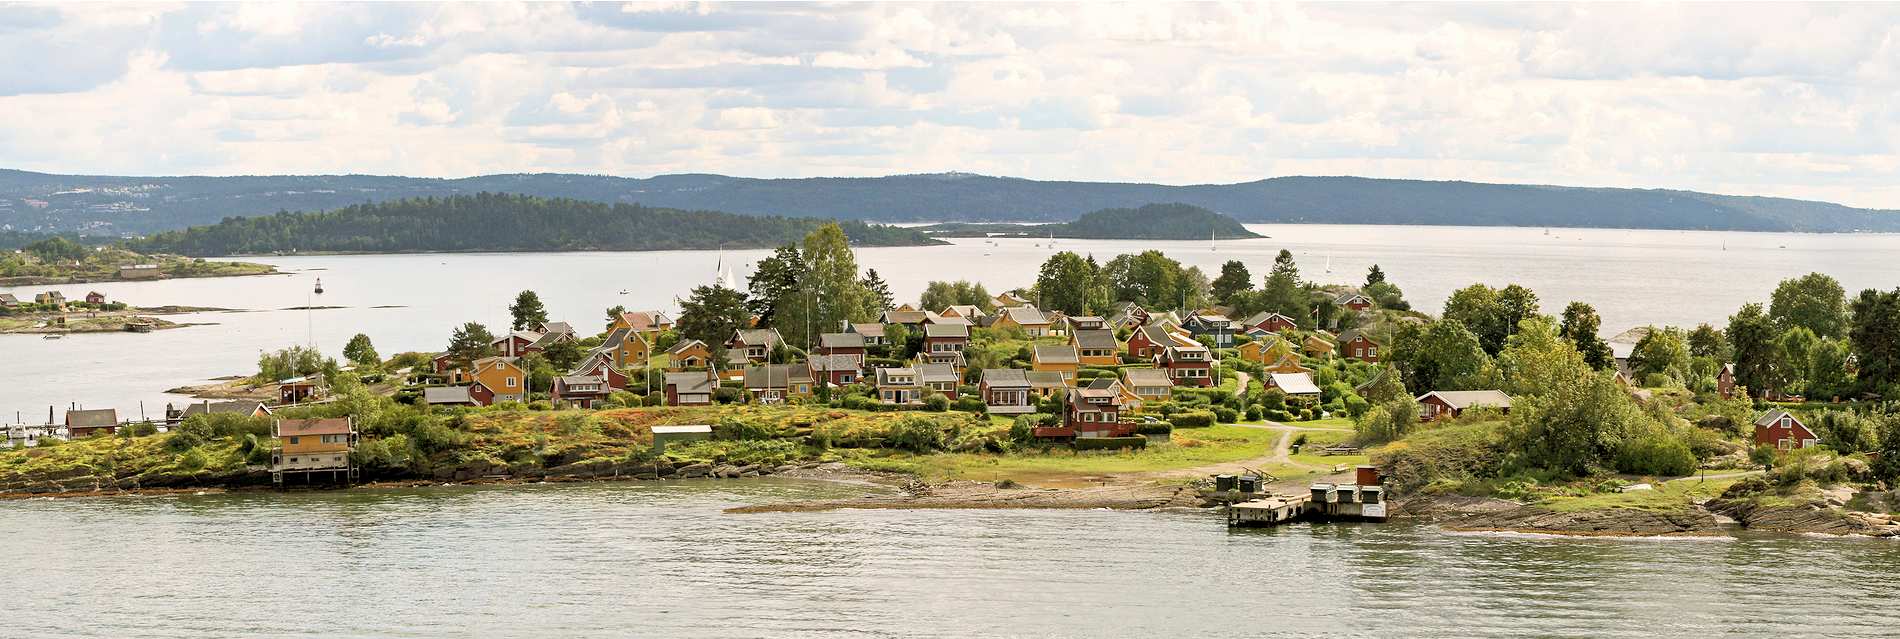 oestliches norwegen oslofjord ferienhaeuser